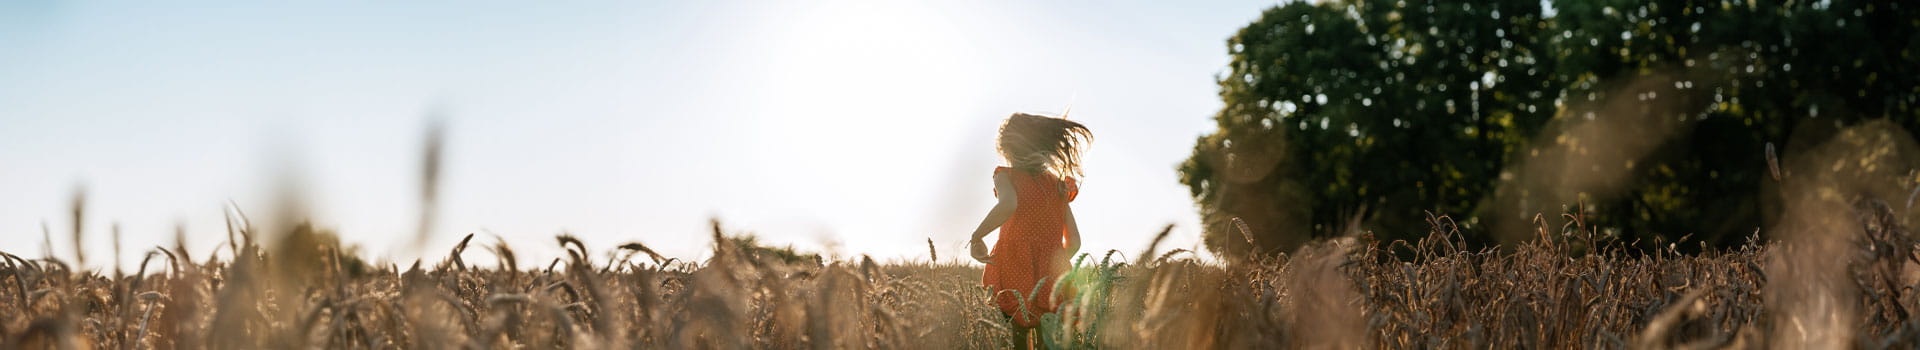 girl running on fields in sunset